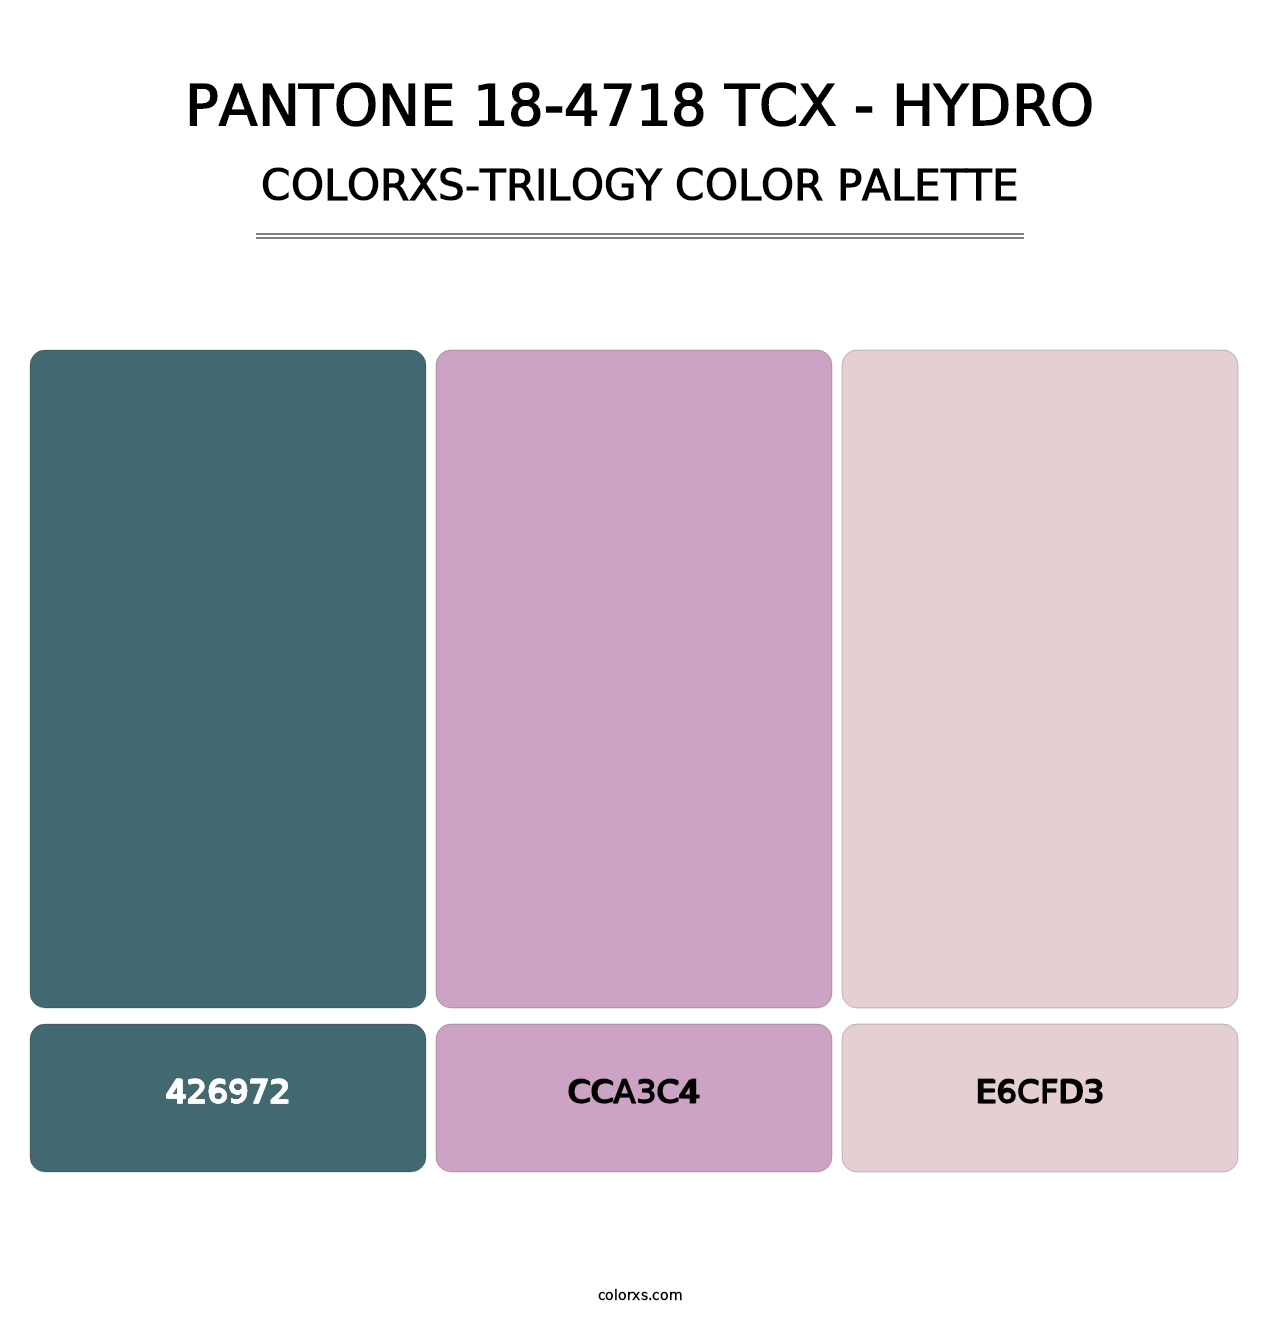 PANTONE 18-4718 TCX - Hydro - Colorxs Trilogy Palette